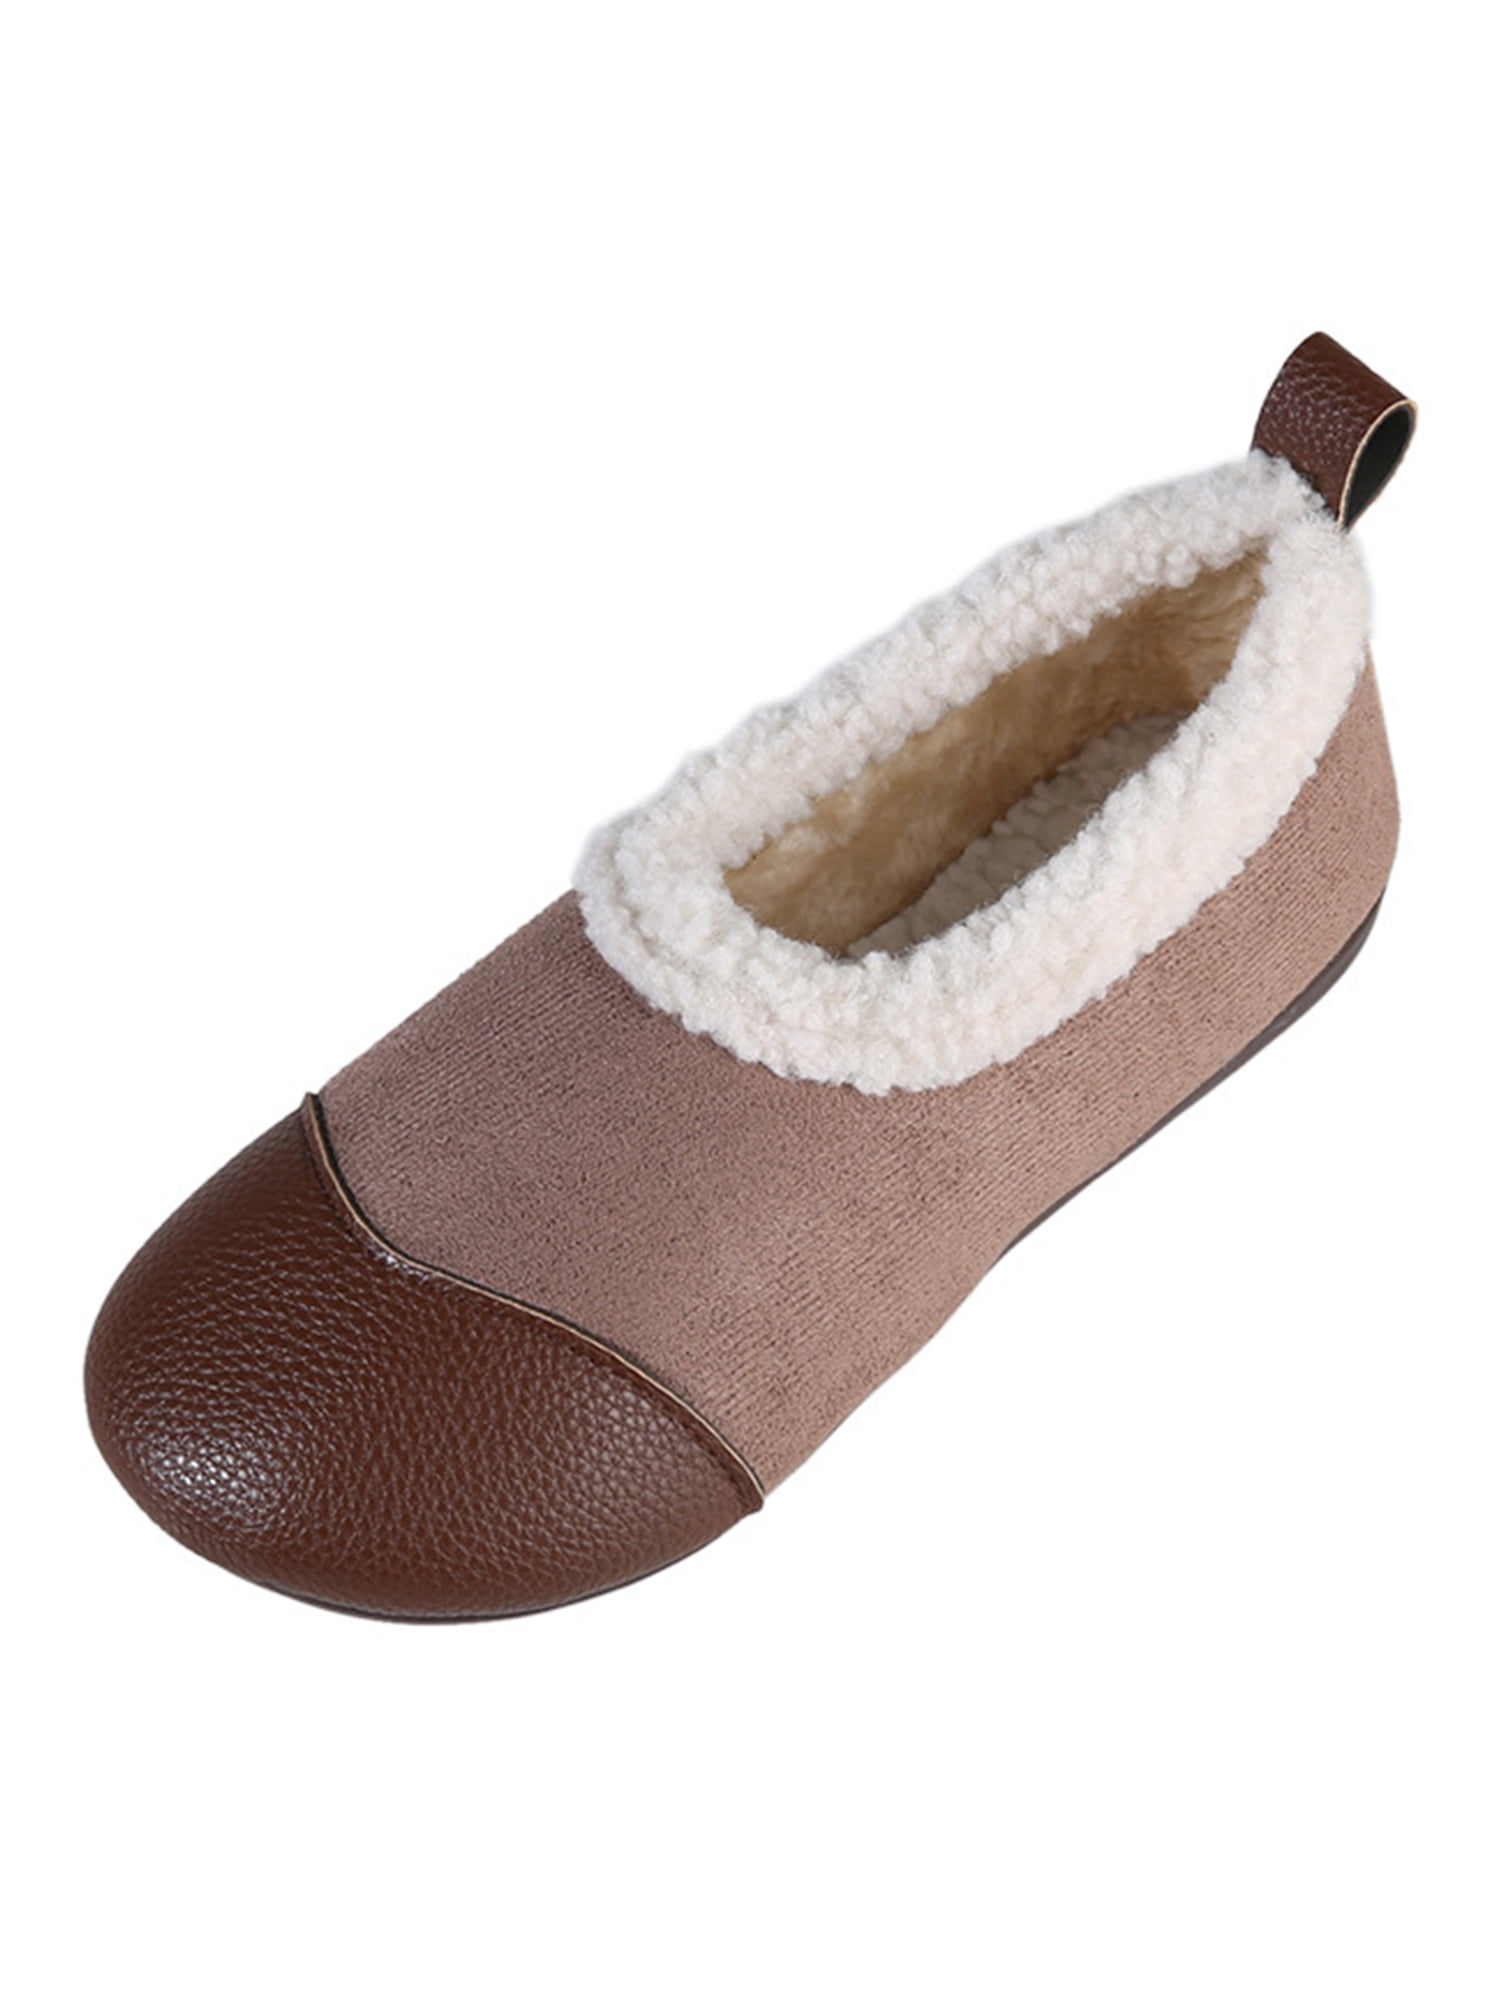 SIMANLAN Women Loafers Cozy Flats Fleece Loafer Slippers Work 